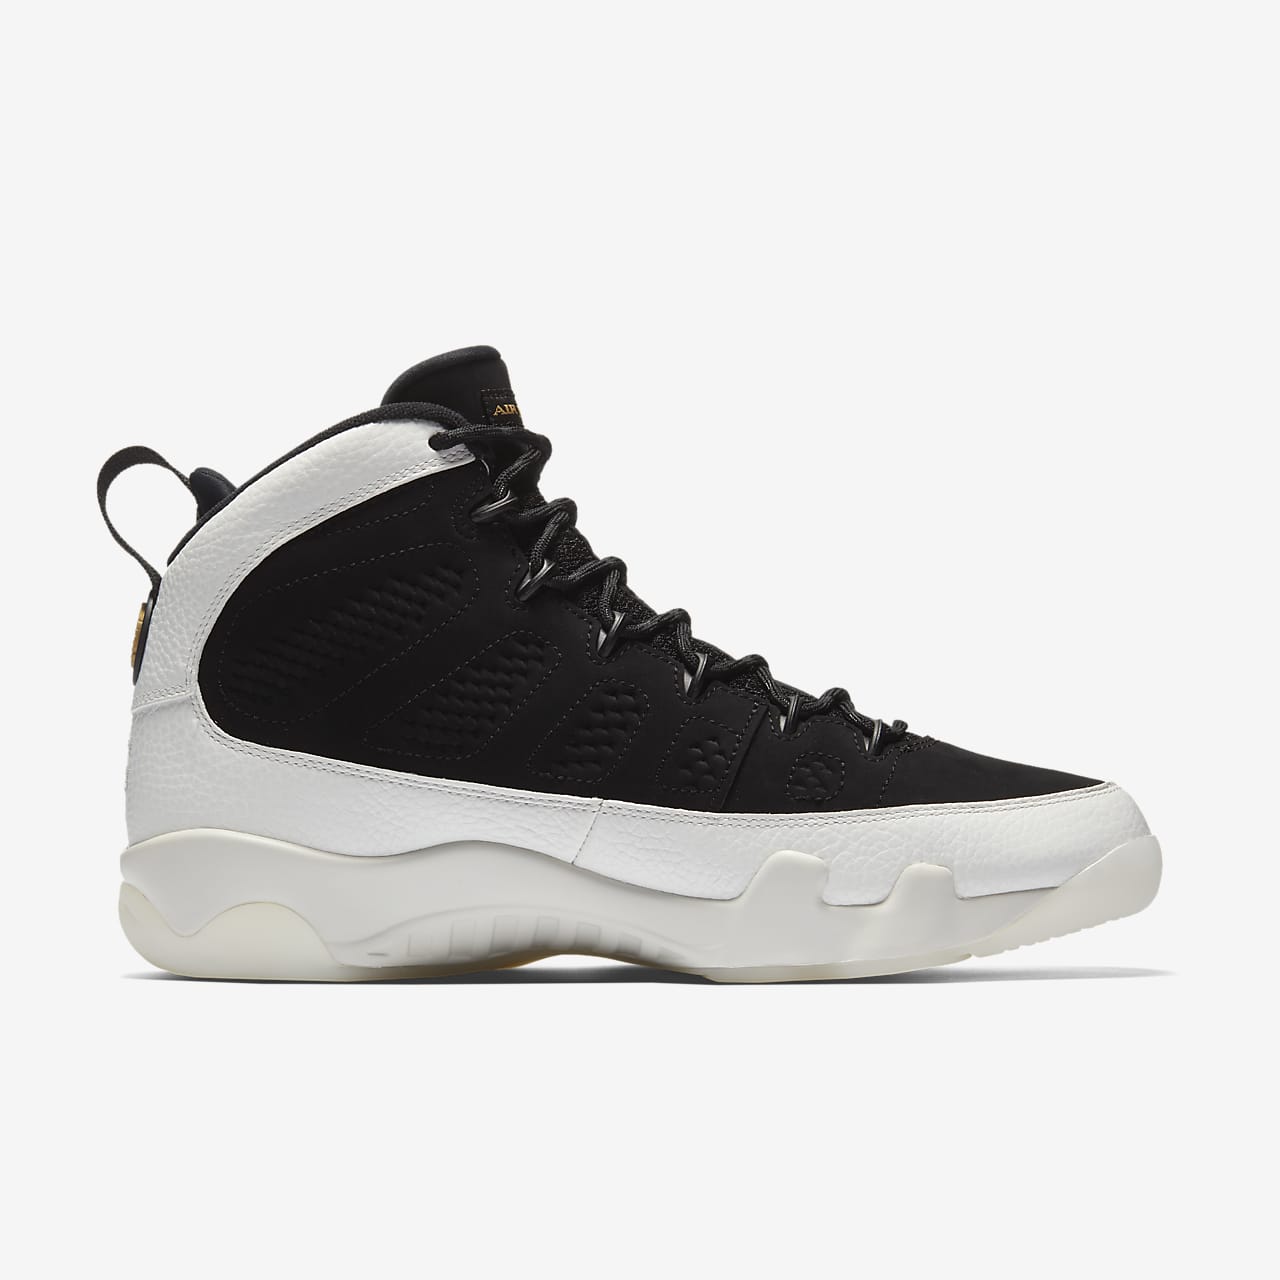 Air Jordan Retro Shoe. Nike